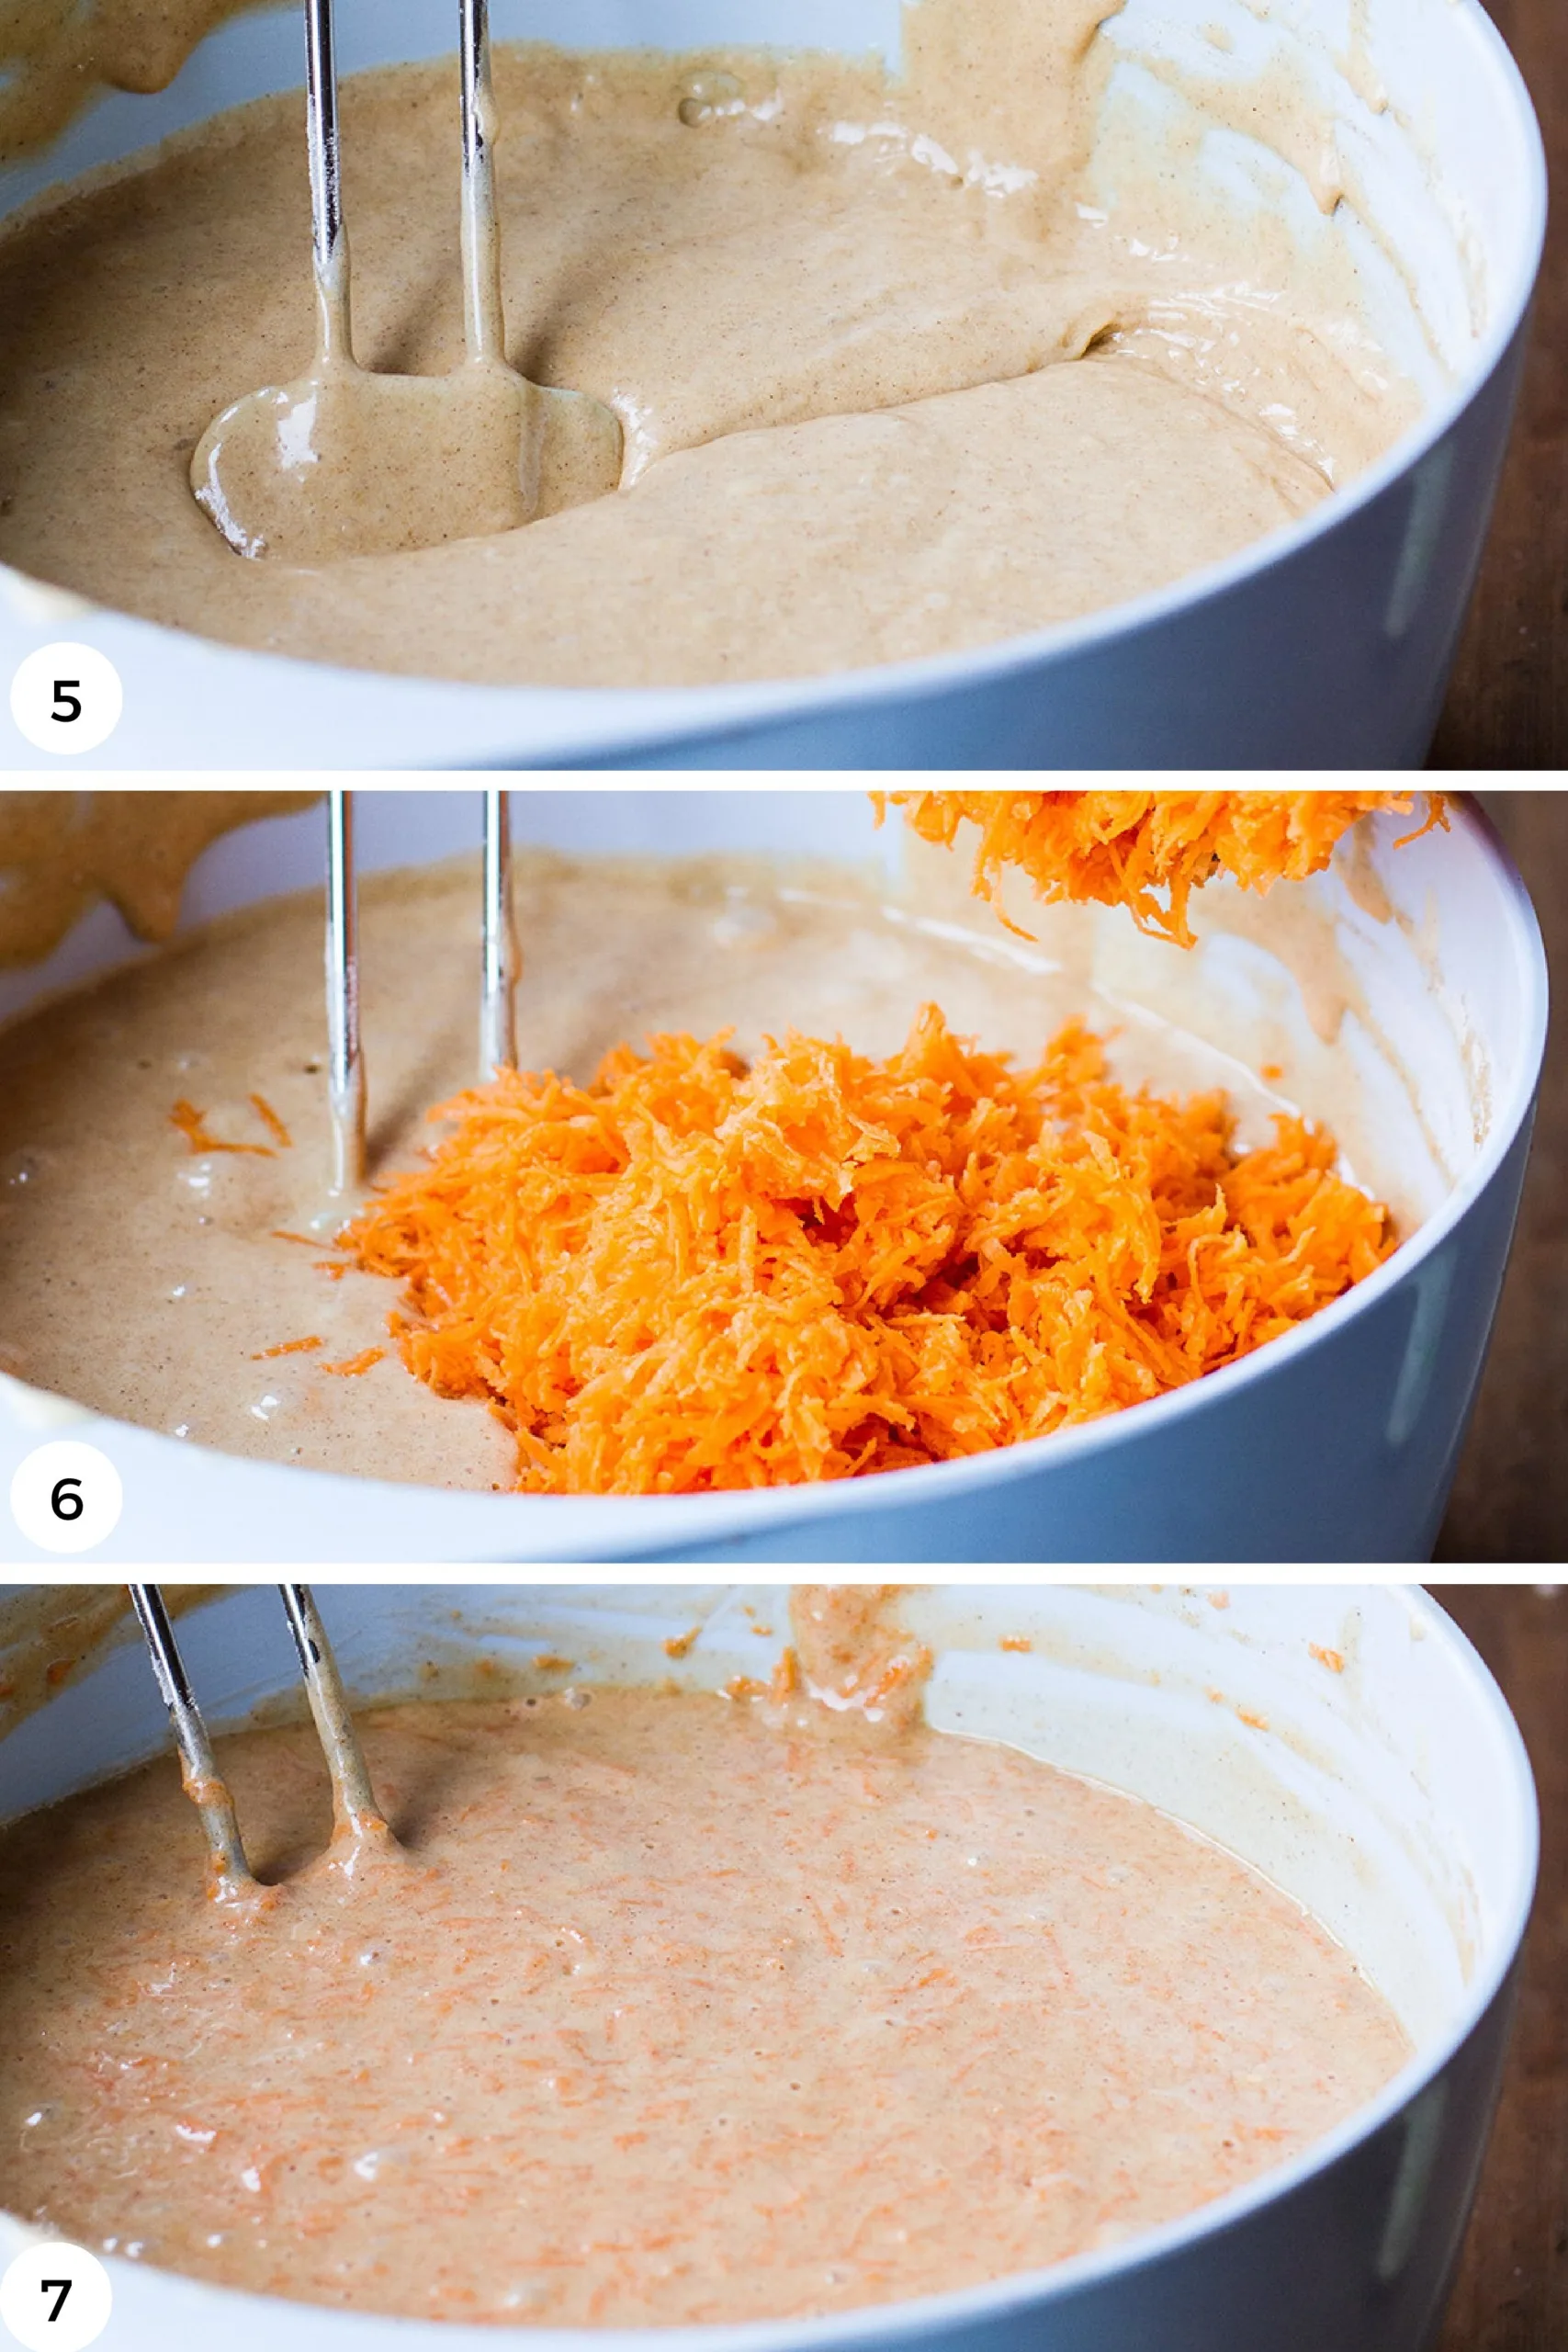 Adding shredded carrot to the cake batter.